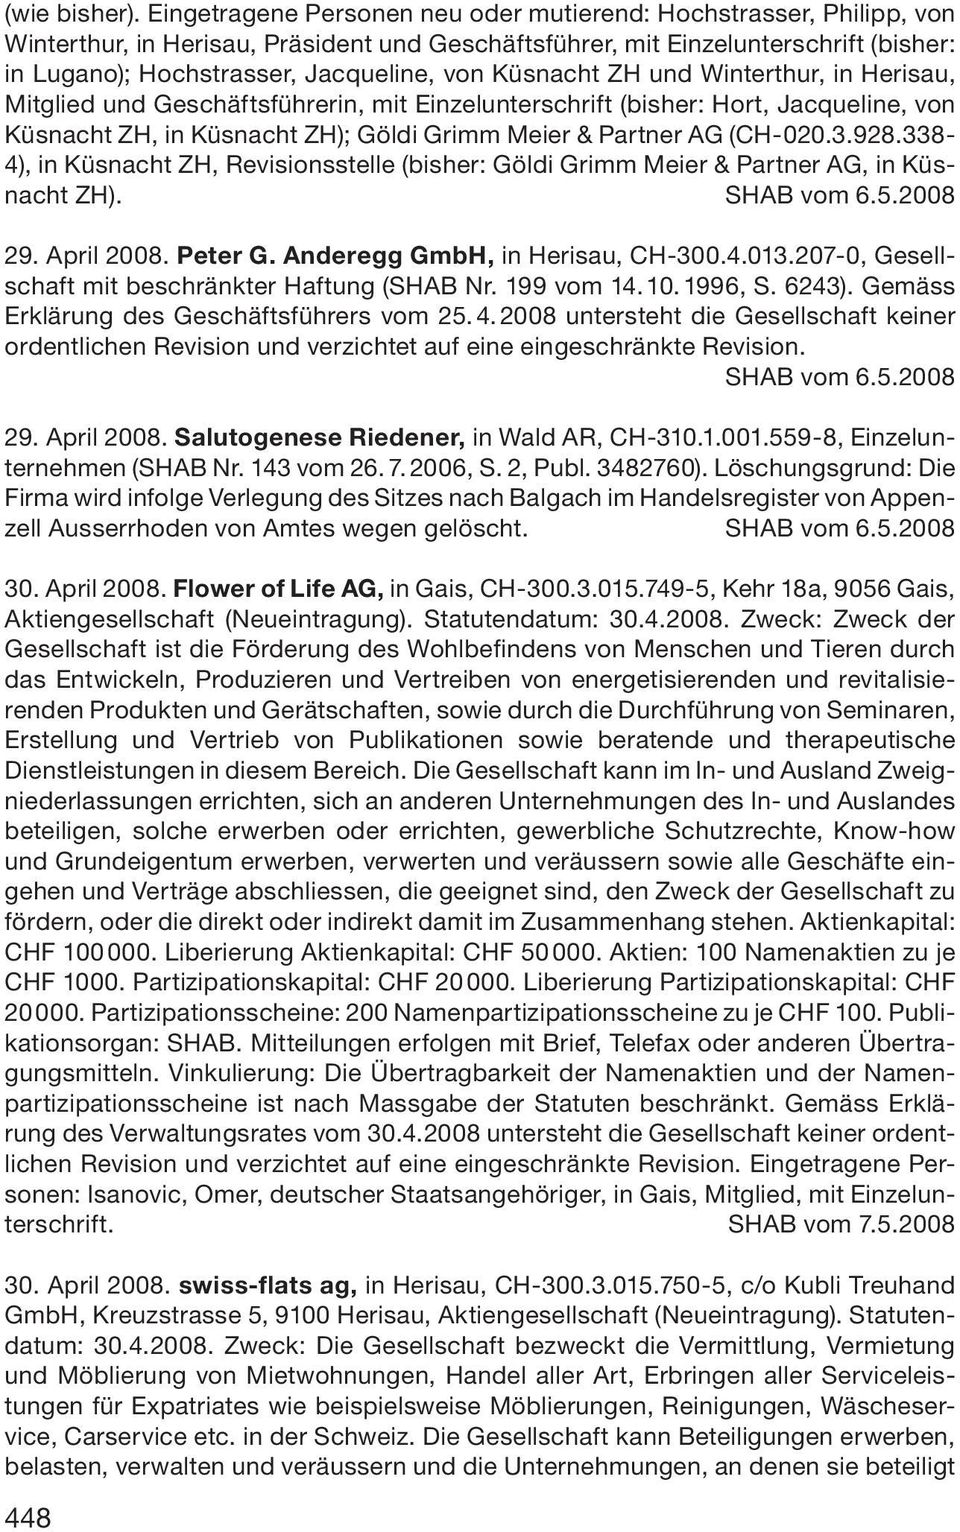 Küsnacht ZH und Winterthur, in Herisau, Mitglied und Geschäftsführerin, mit Einzelunterschrift (bisher: Hort, Jacqueline, von Küsnacht ZH, in Küsnacht ZH); Göldi Grimm Meier & Partner AG (CH-020.3.